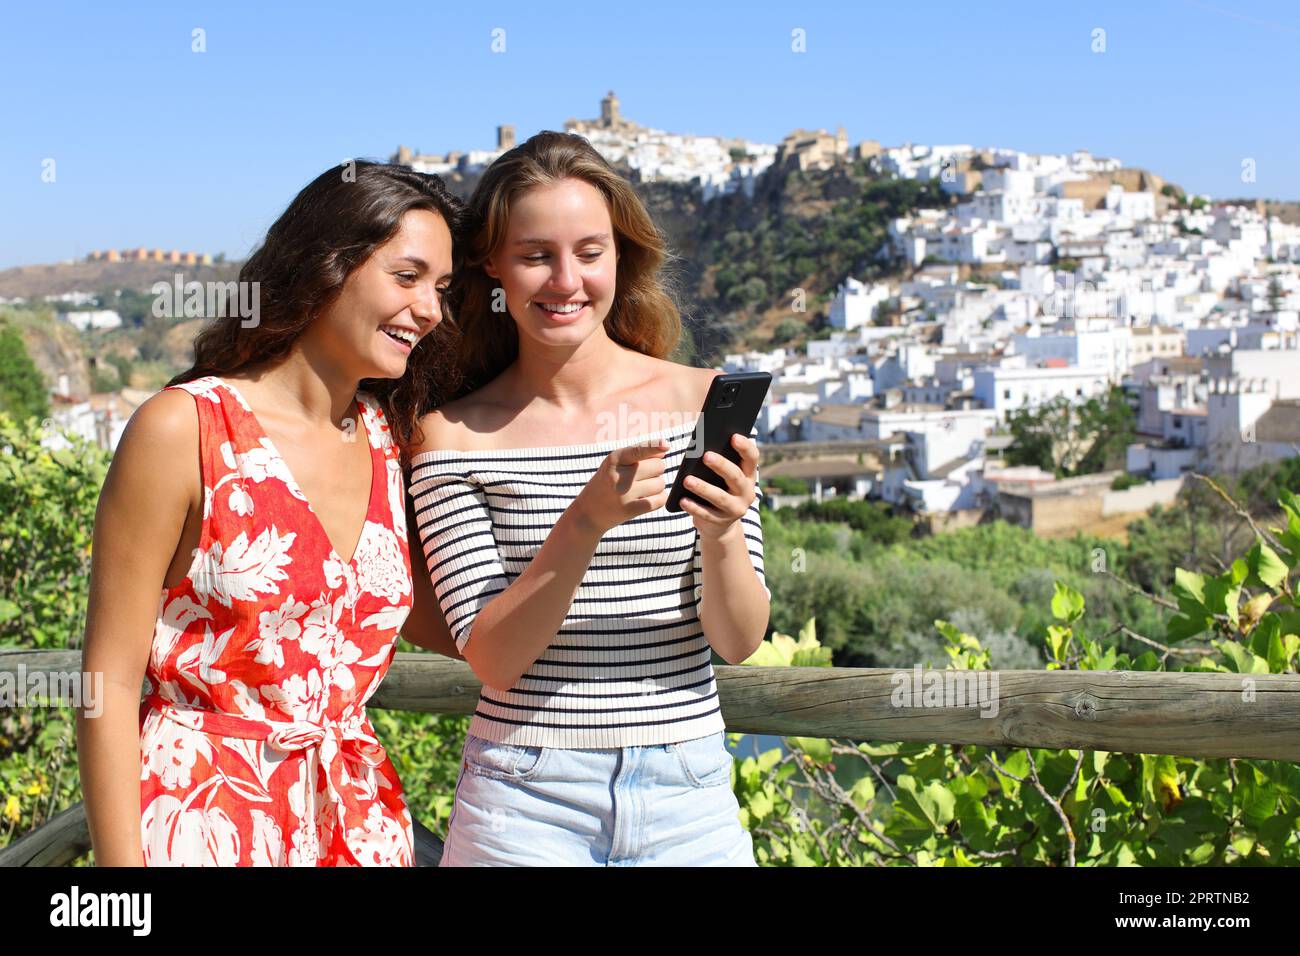 Les touristes heureux vérifiant smartphone pendant les vacances d'été Banque D'Images